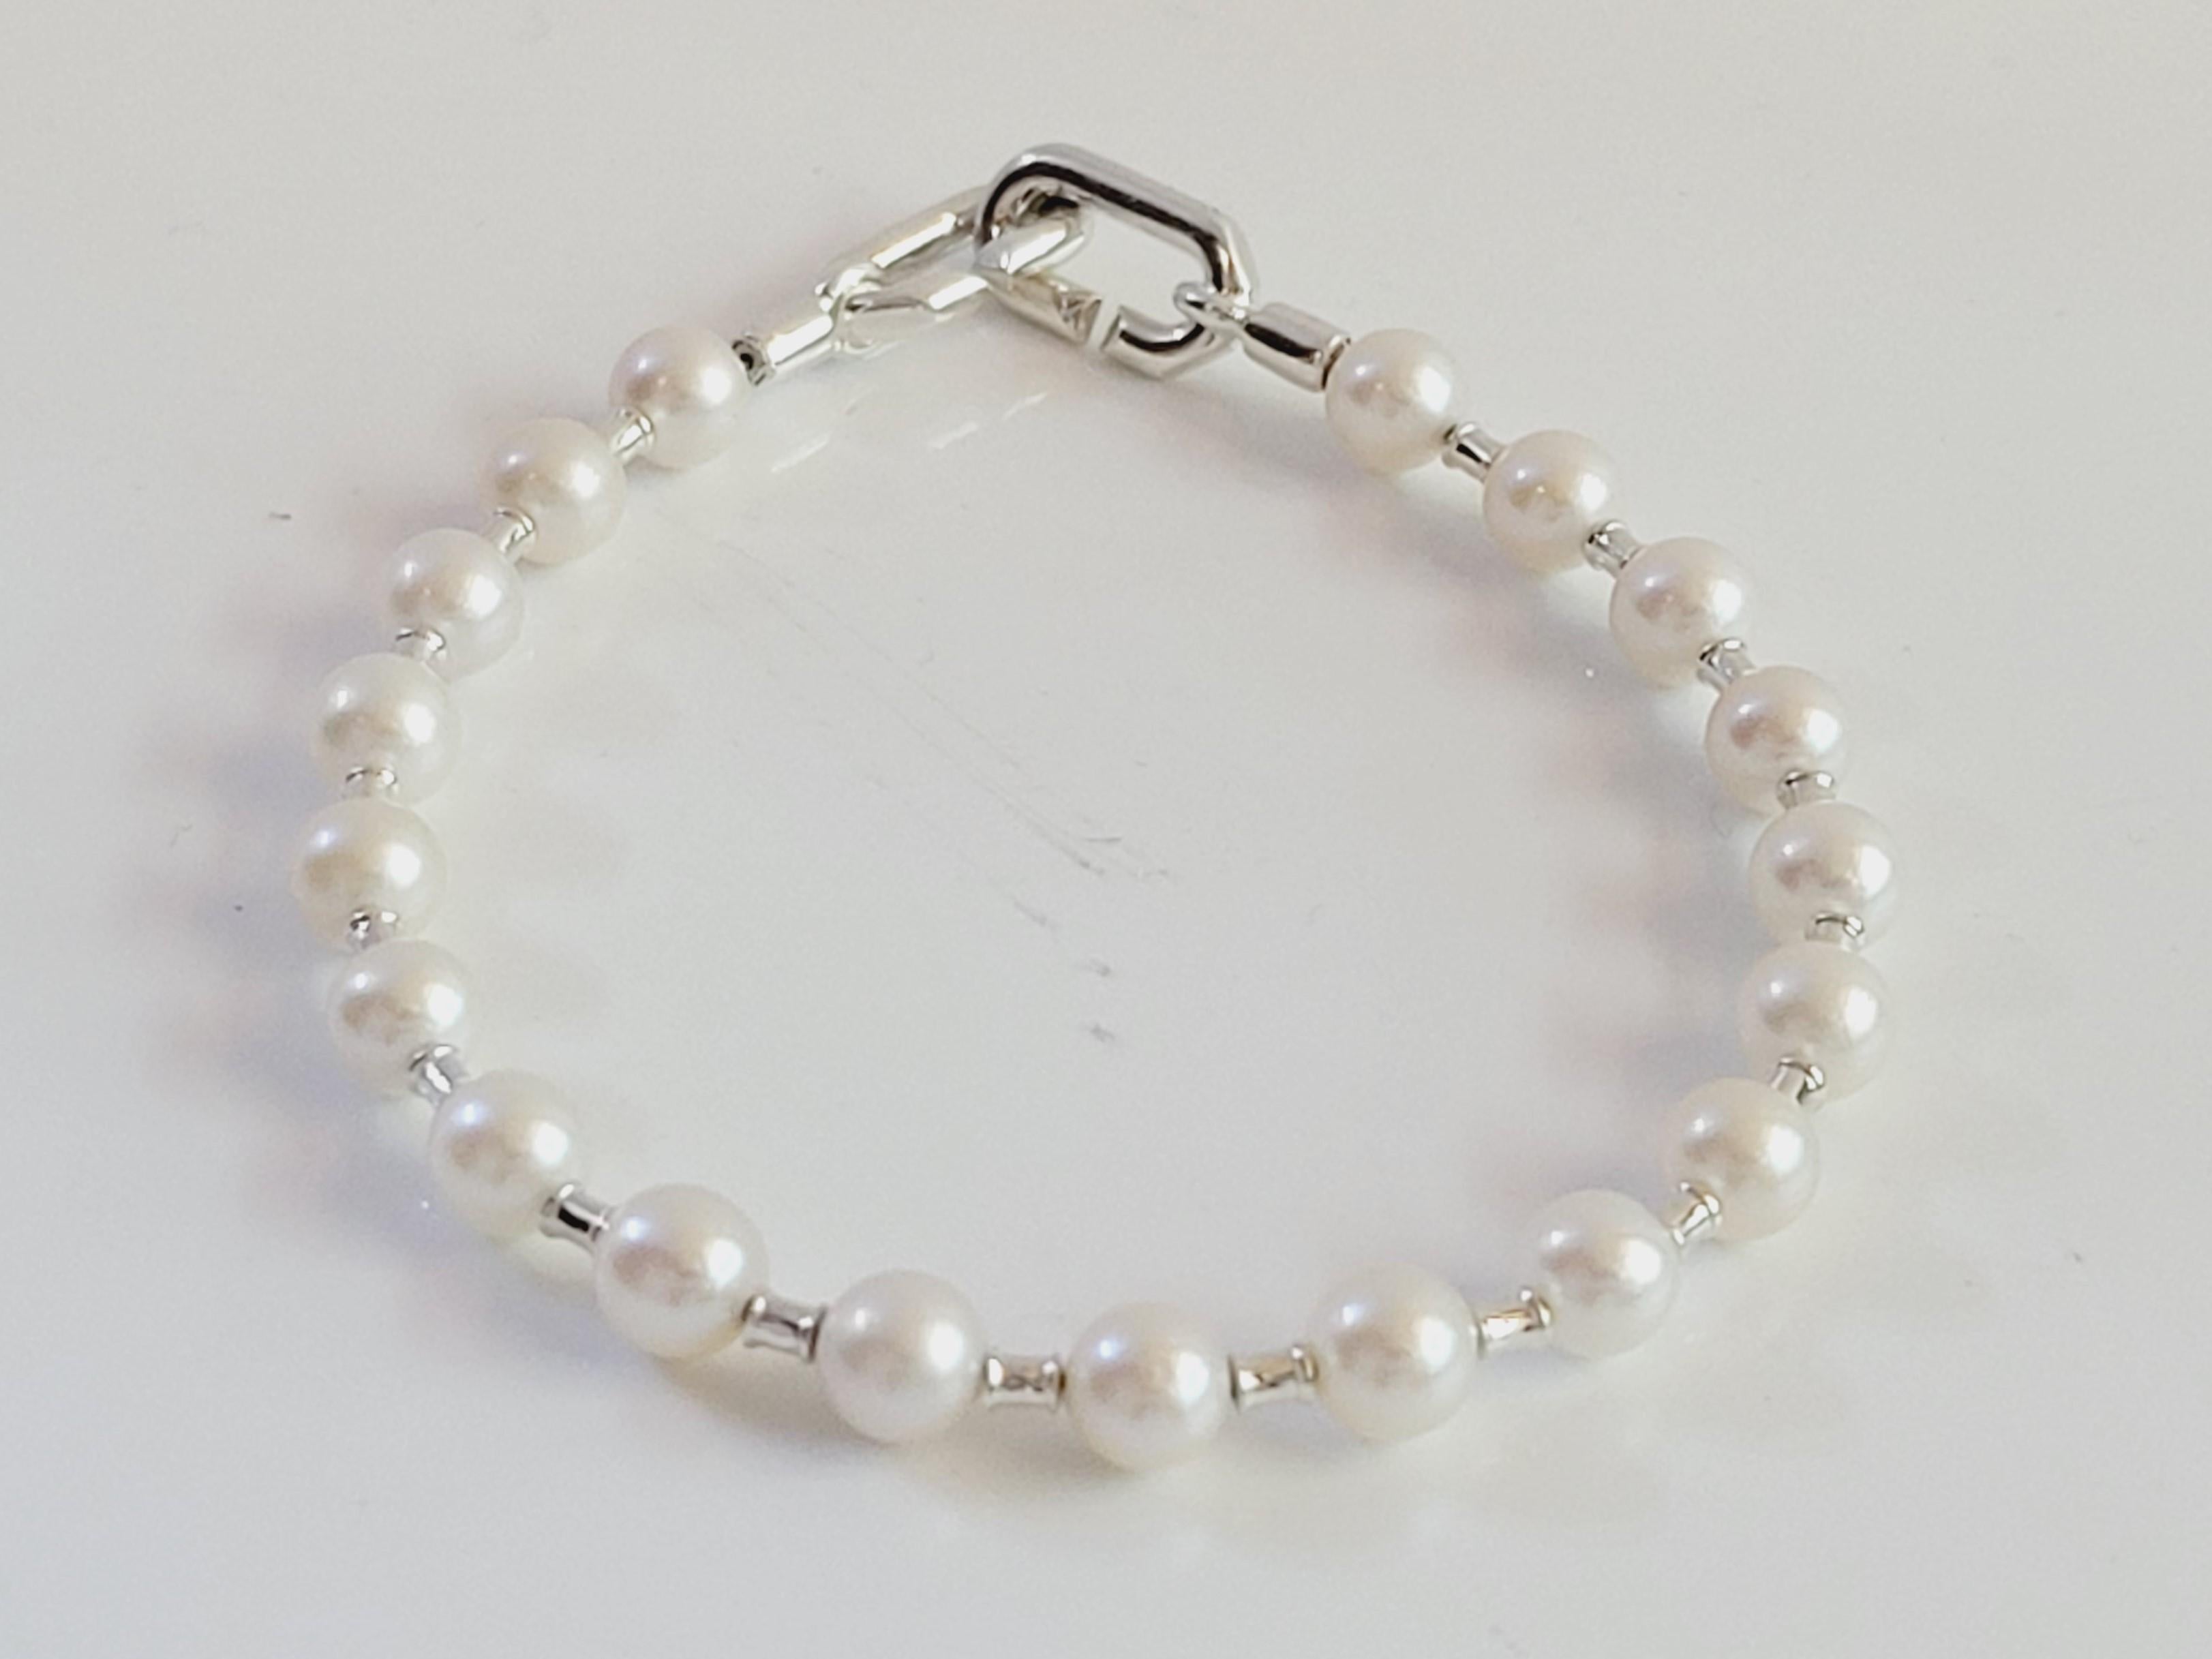 Round Cut Tiffany Hard Wear Pearl Bracelet in Silver, 5-6 mm